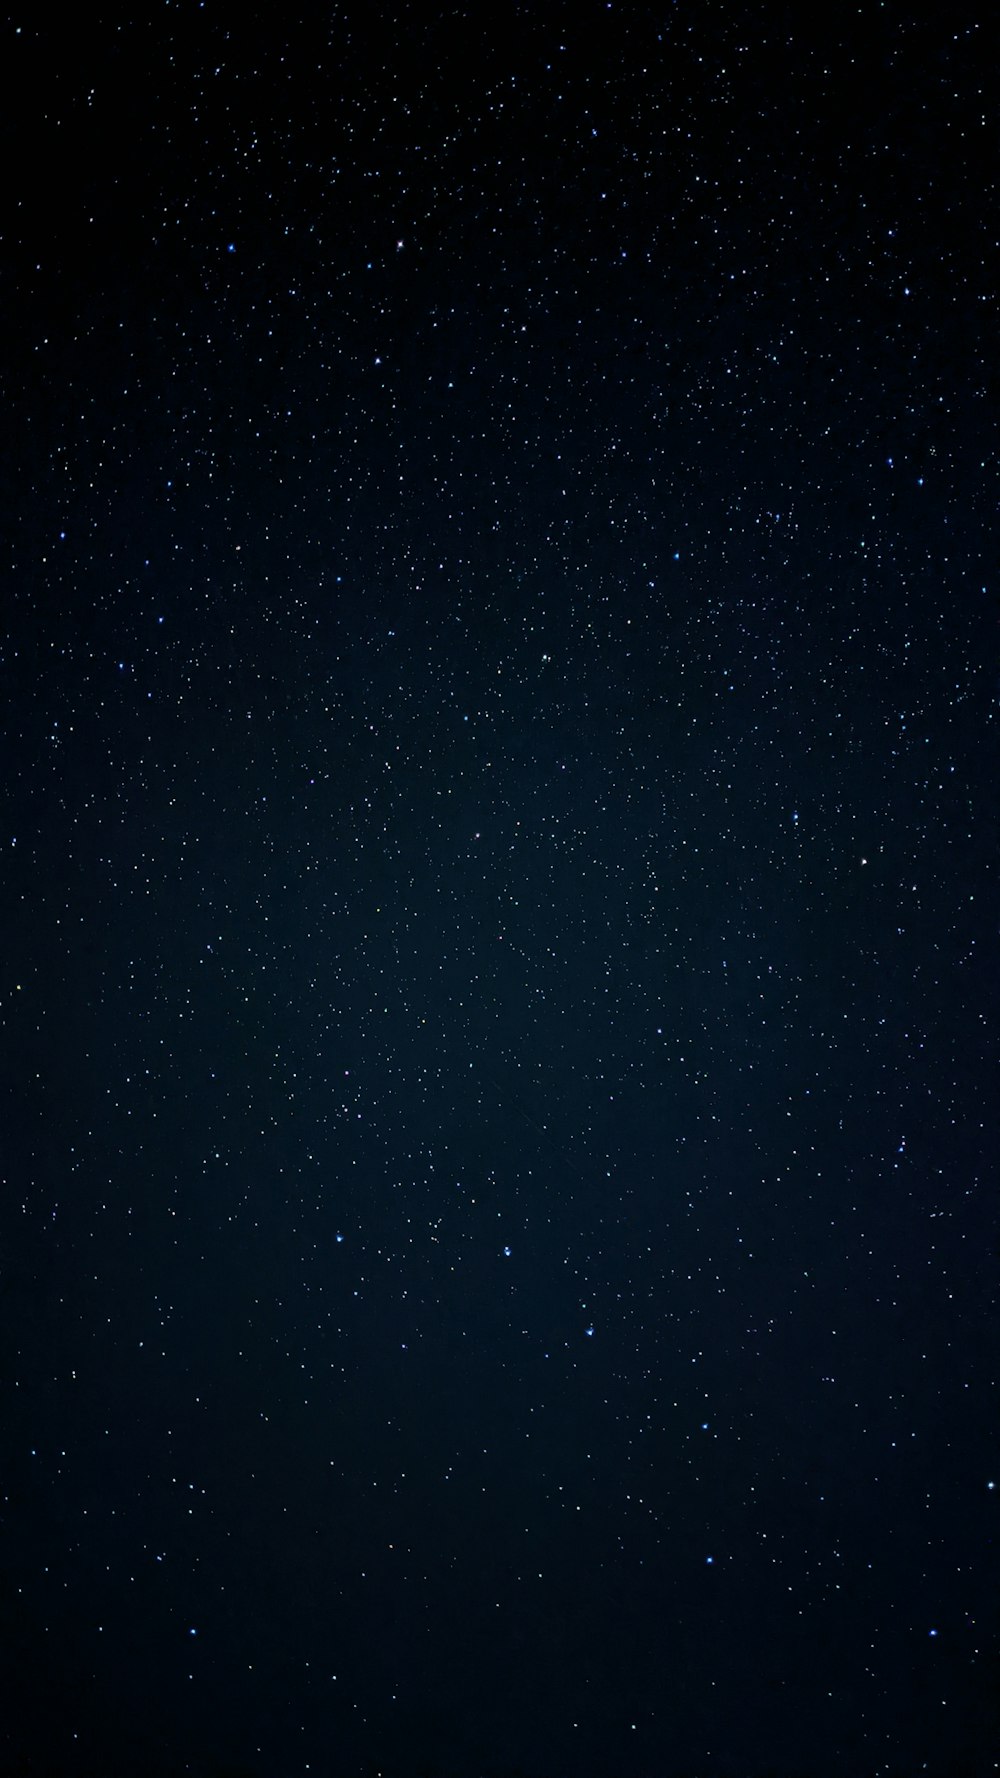 étoiles noires et blanches pendant la nuit